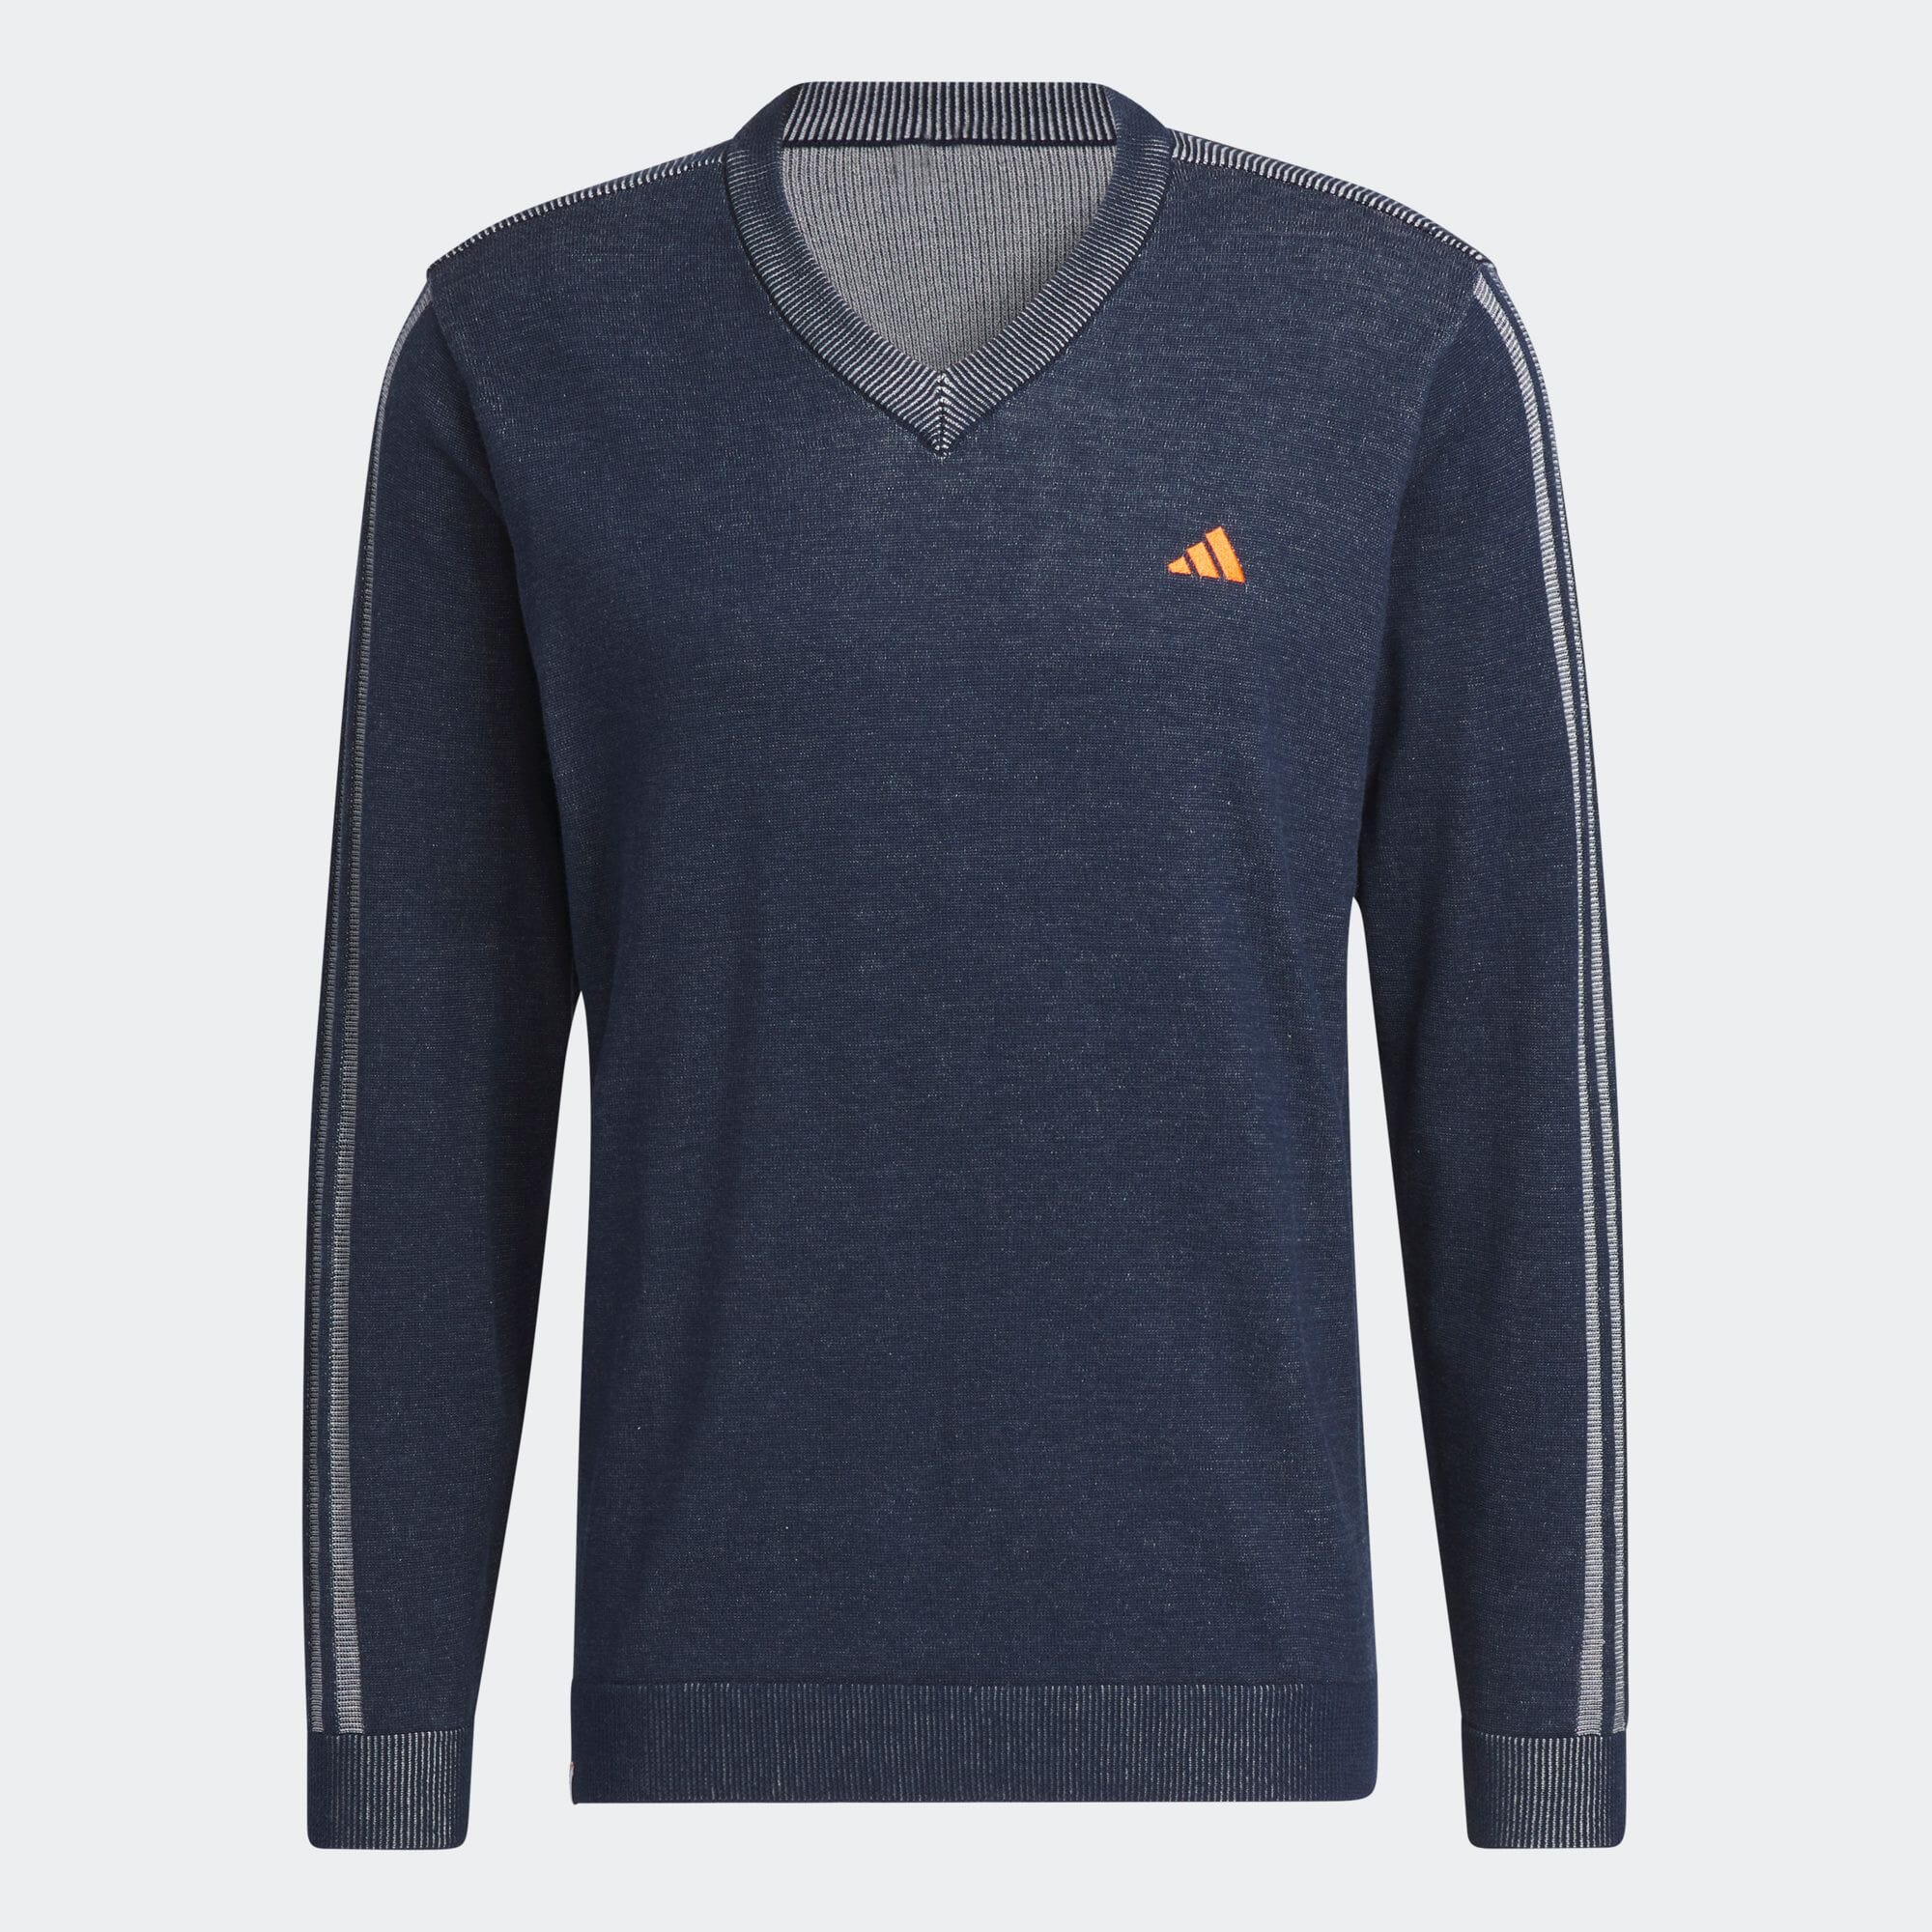 adidas Golf ストライプVネックセーター